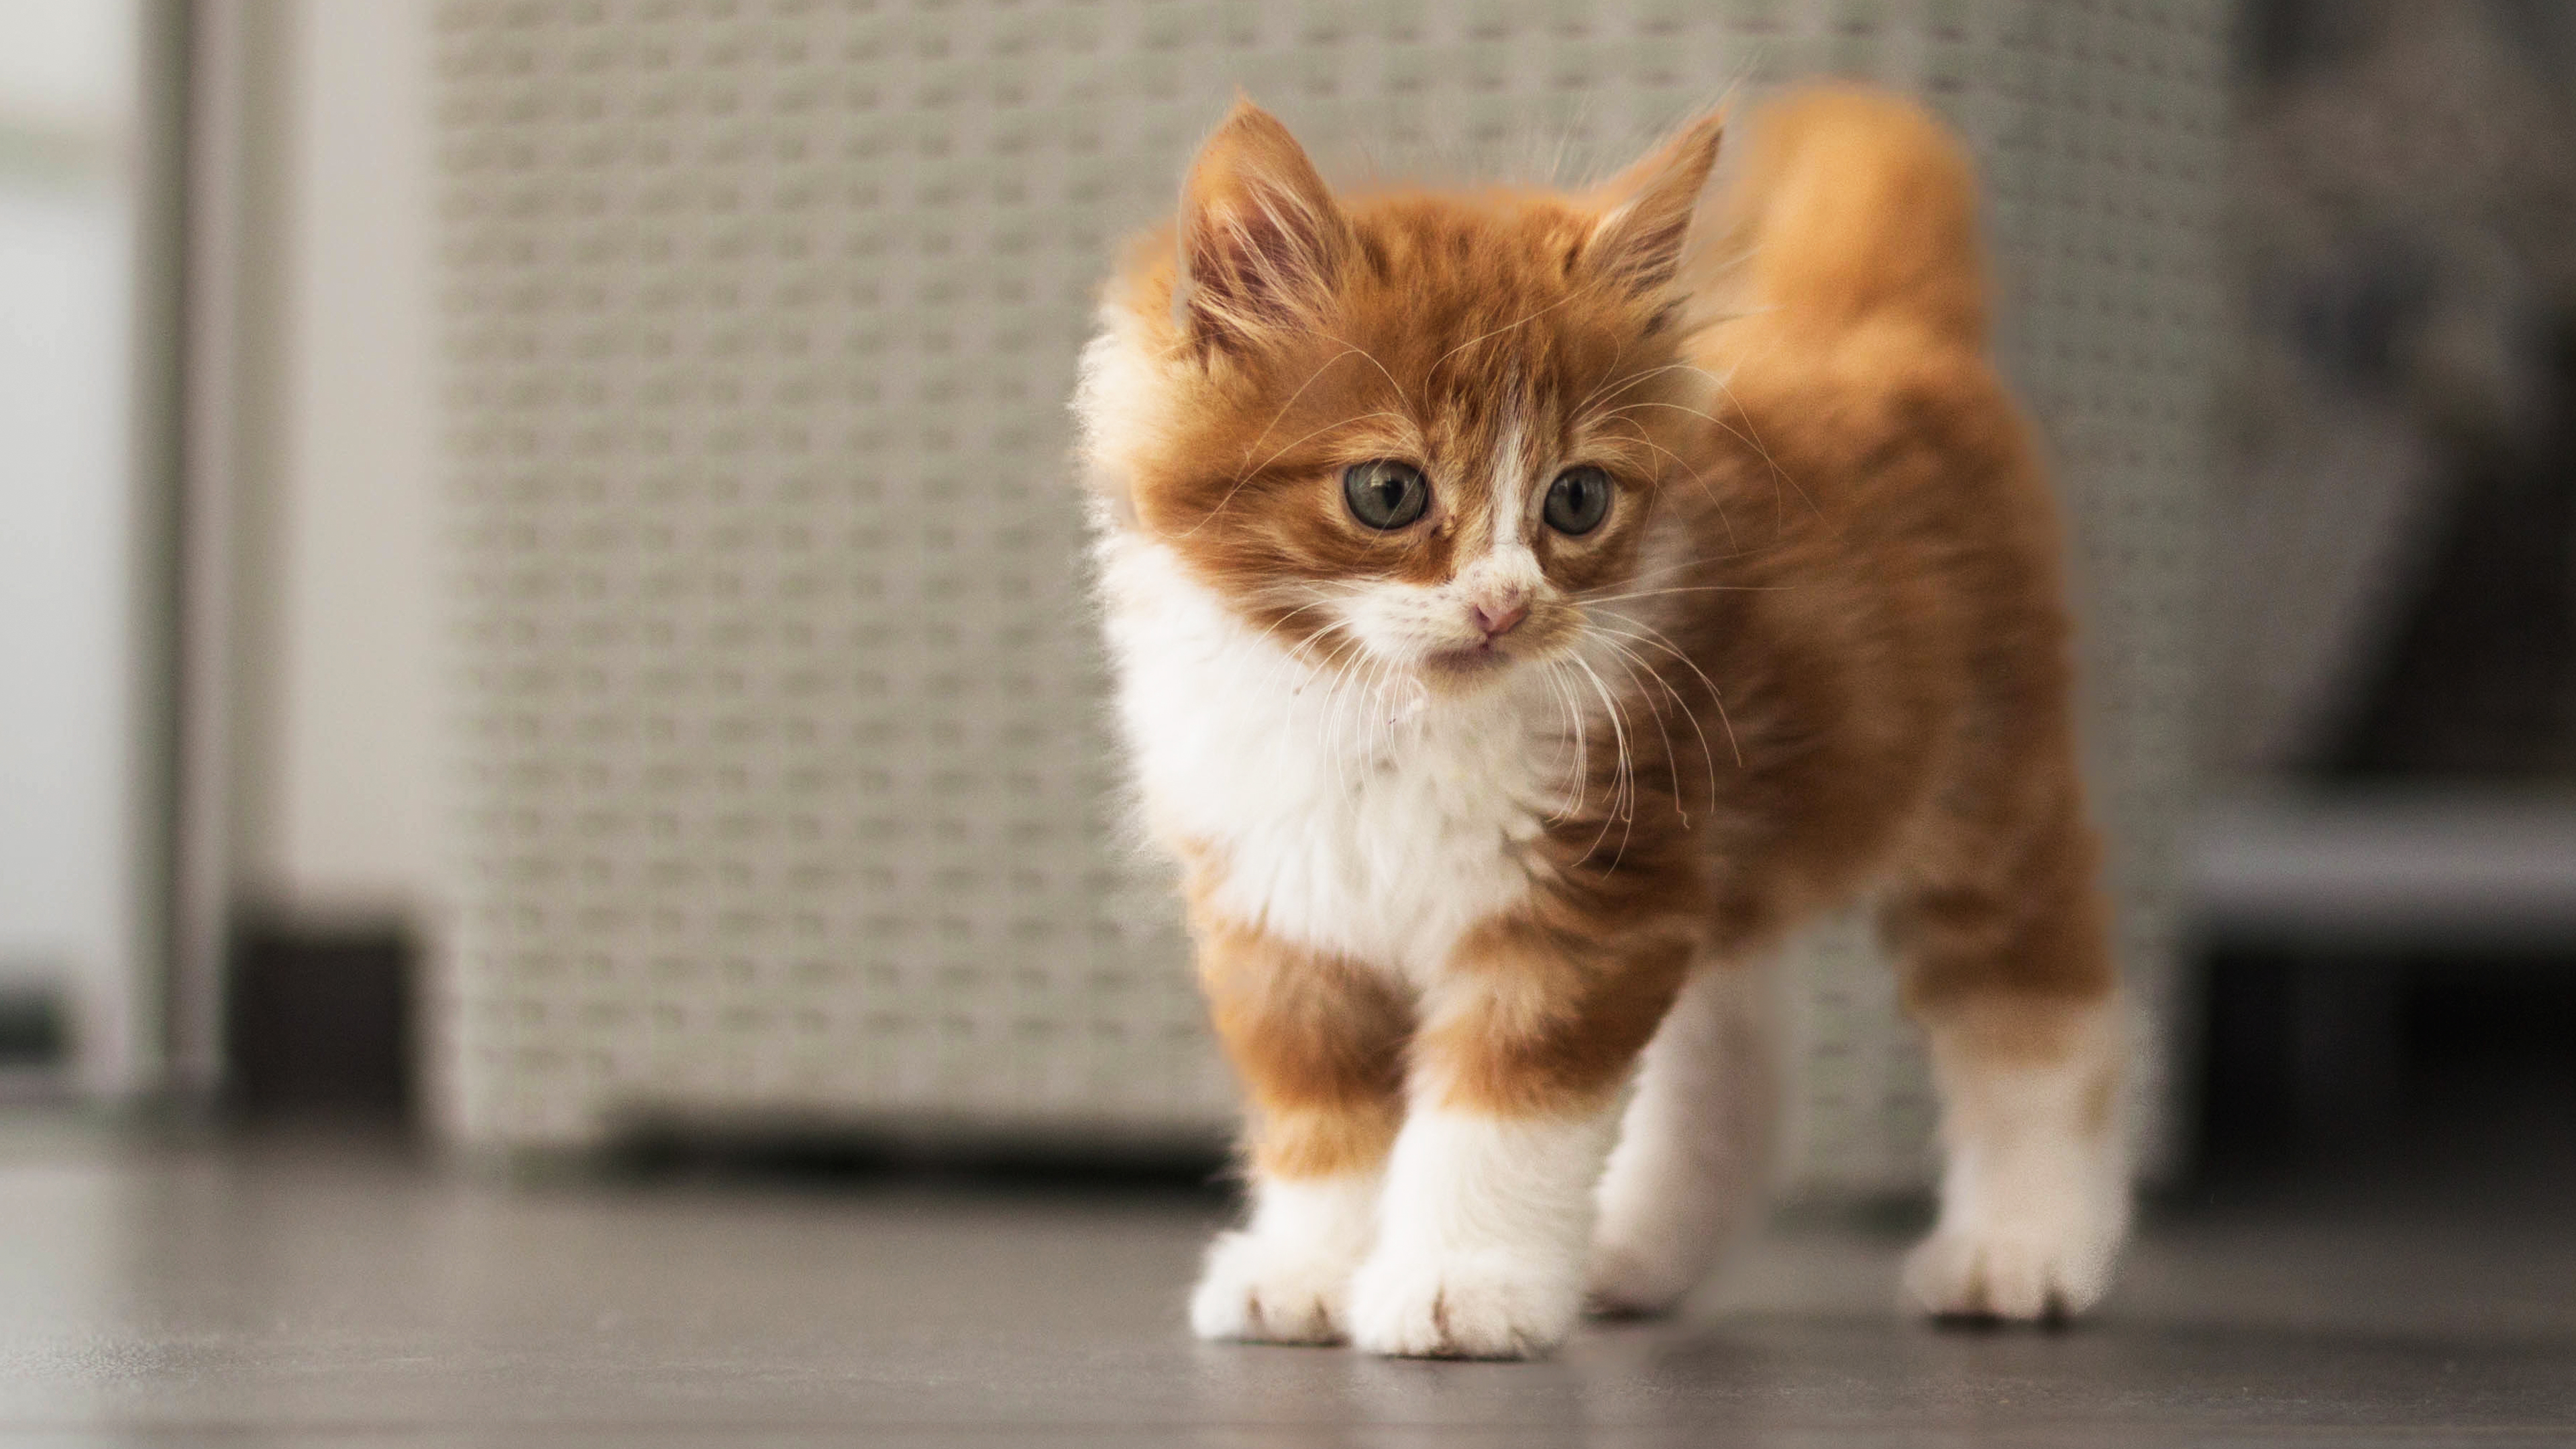 Kitten standing indoors